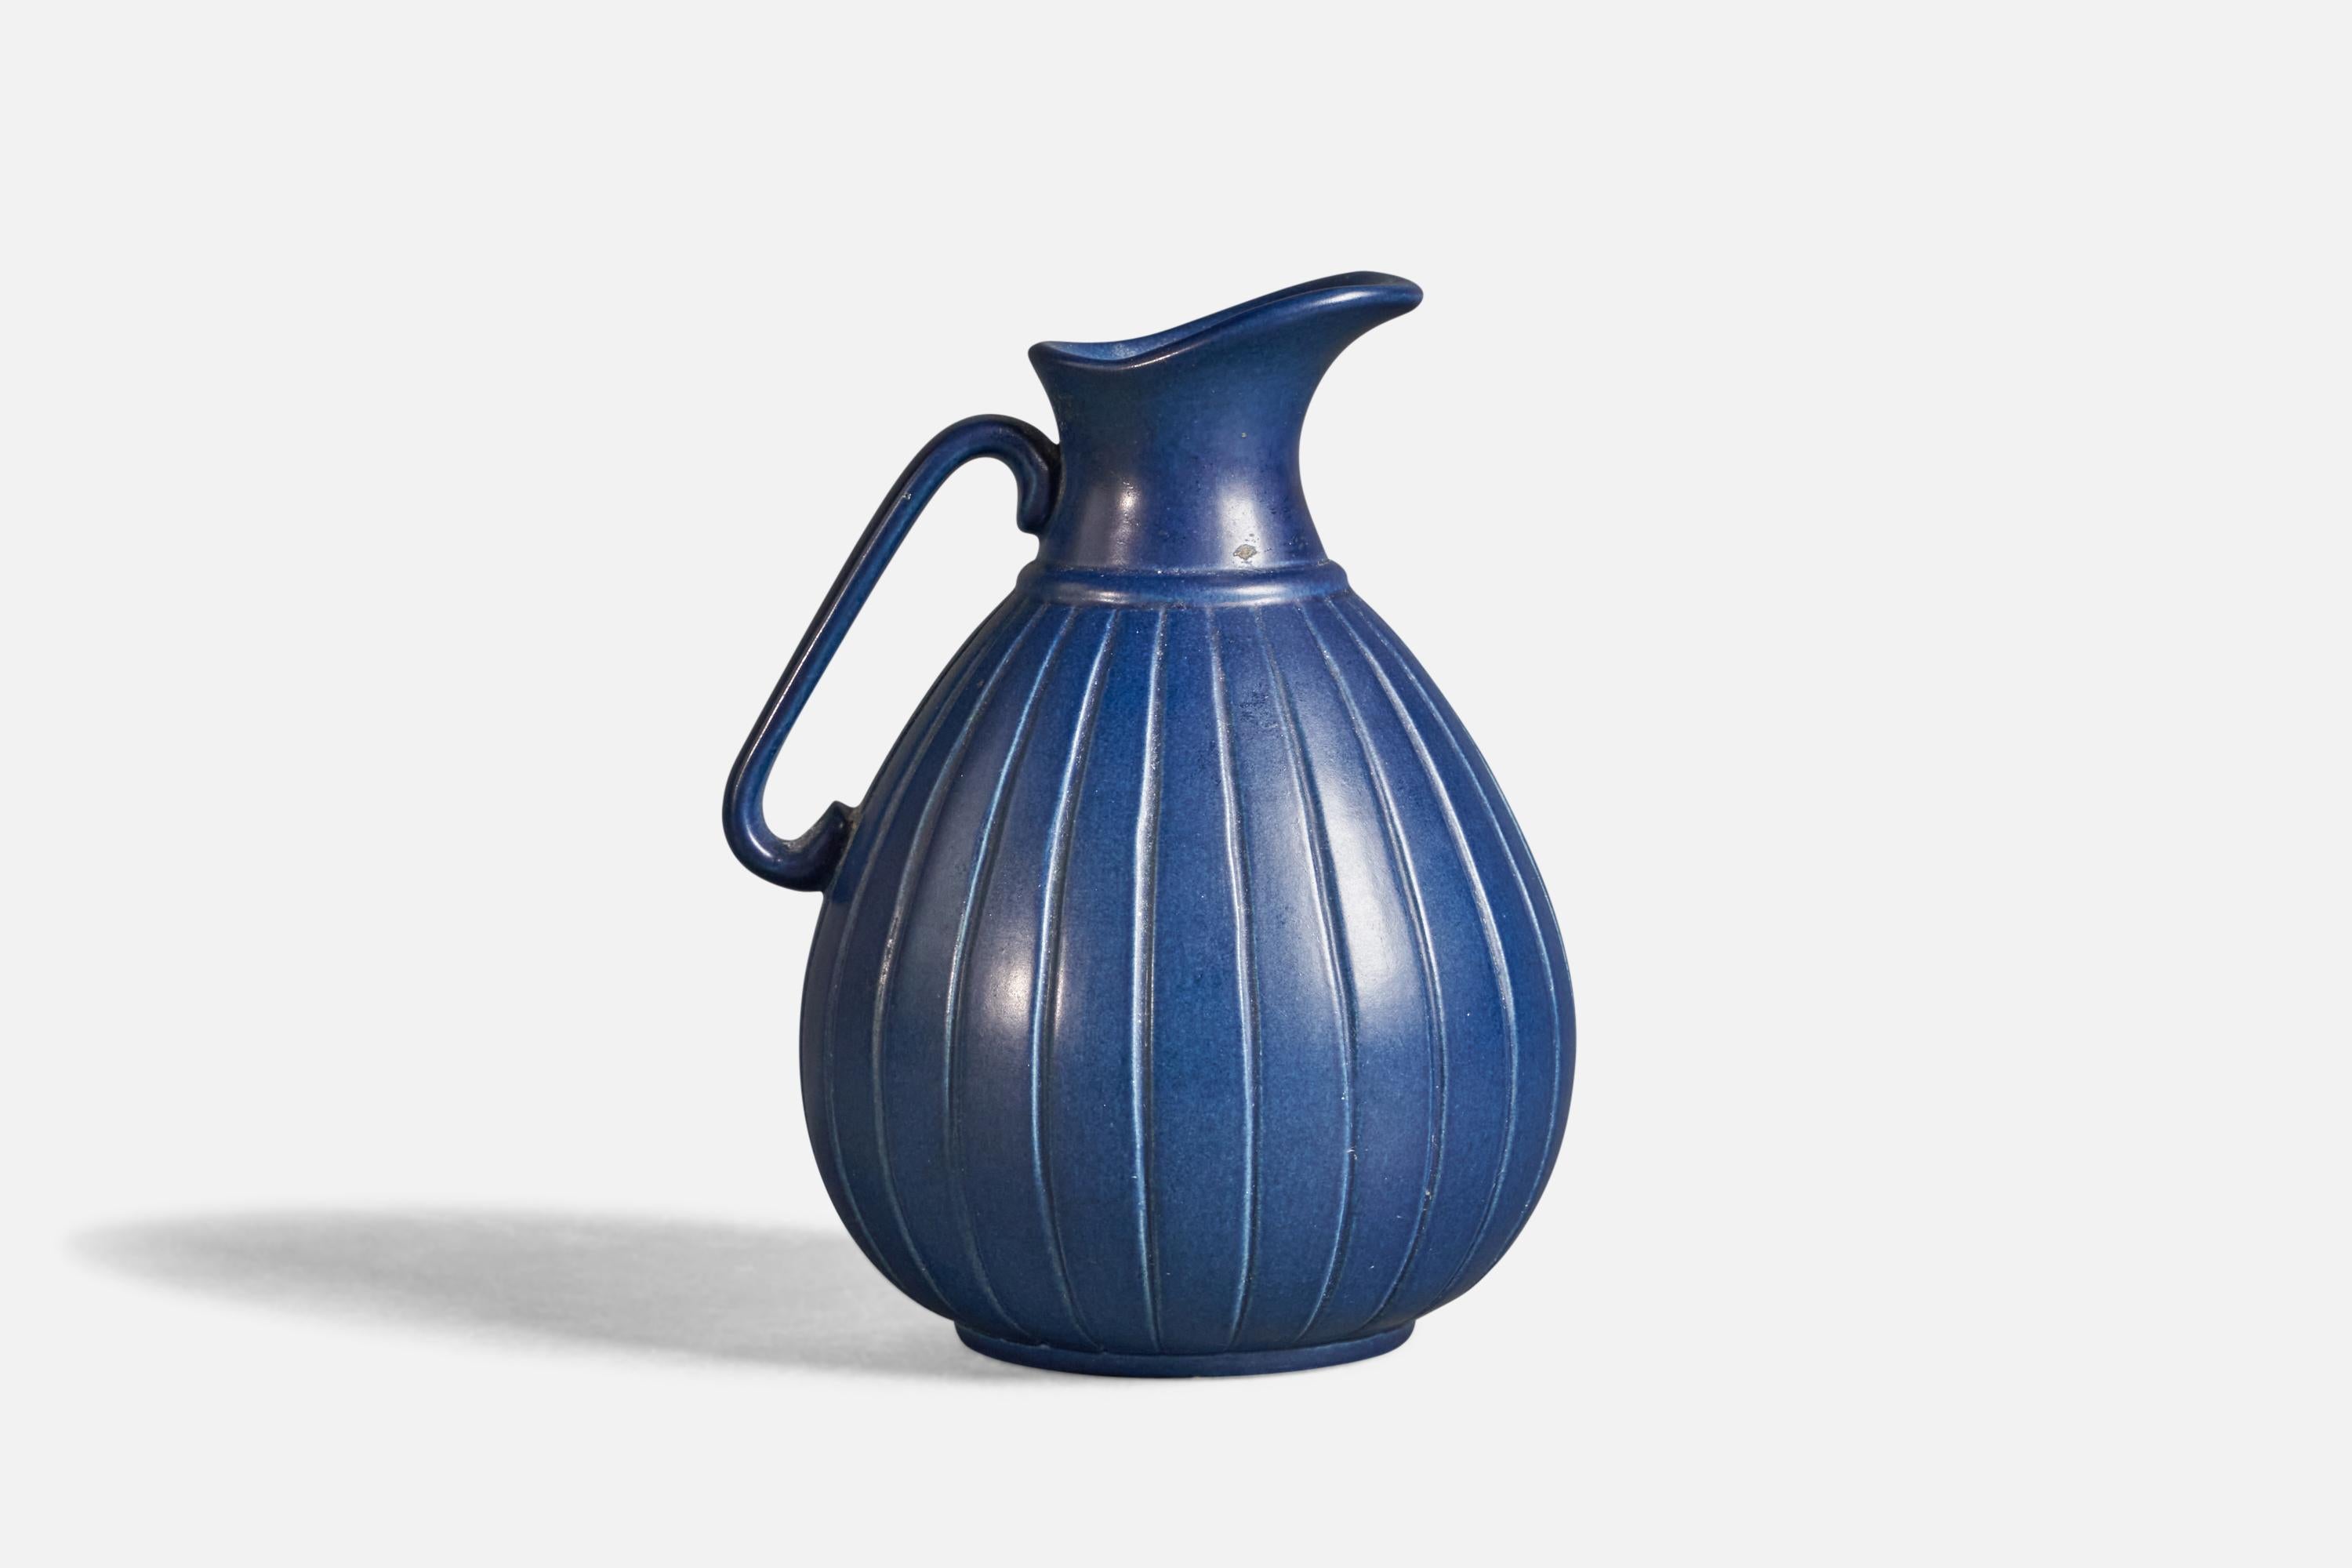 Pichet ou vase en grès émaillé bleu, conçu et produit par Peter Ipsen Enke, Danemark, vers les années 1940.